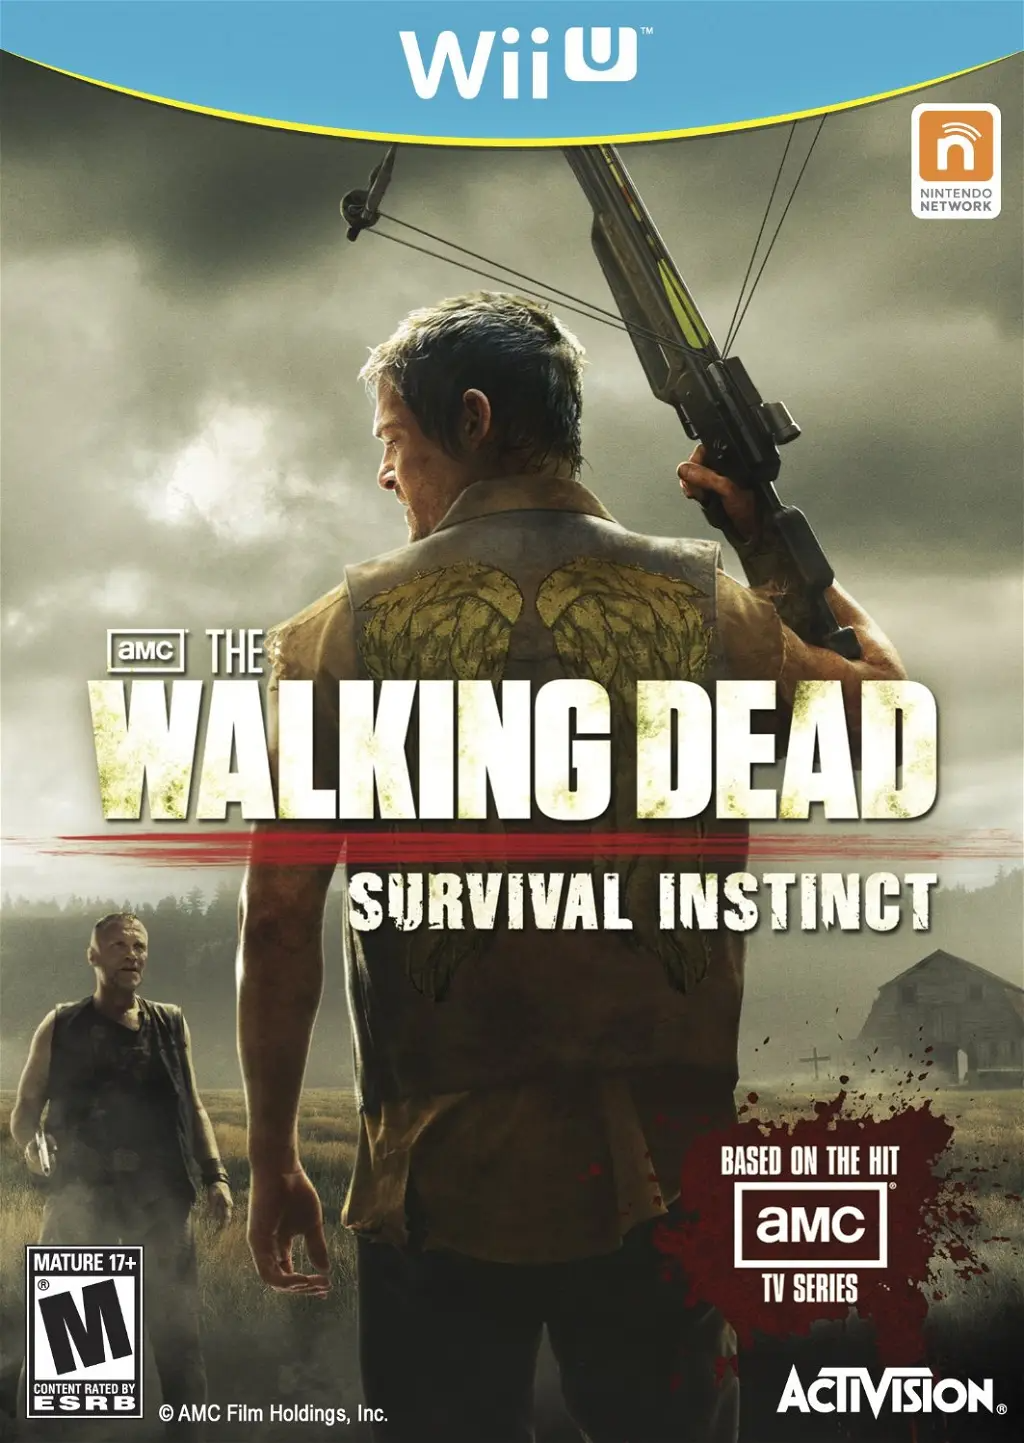 The Walking Dead: Survival Instinct WII U